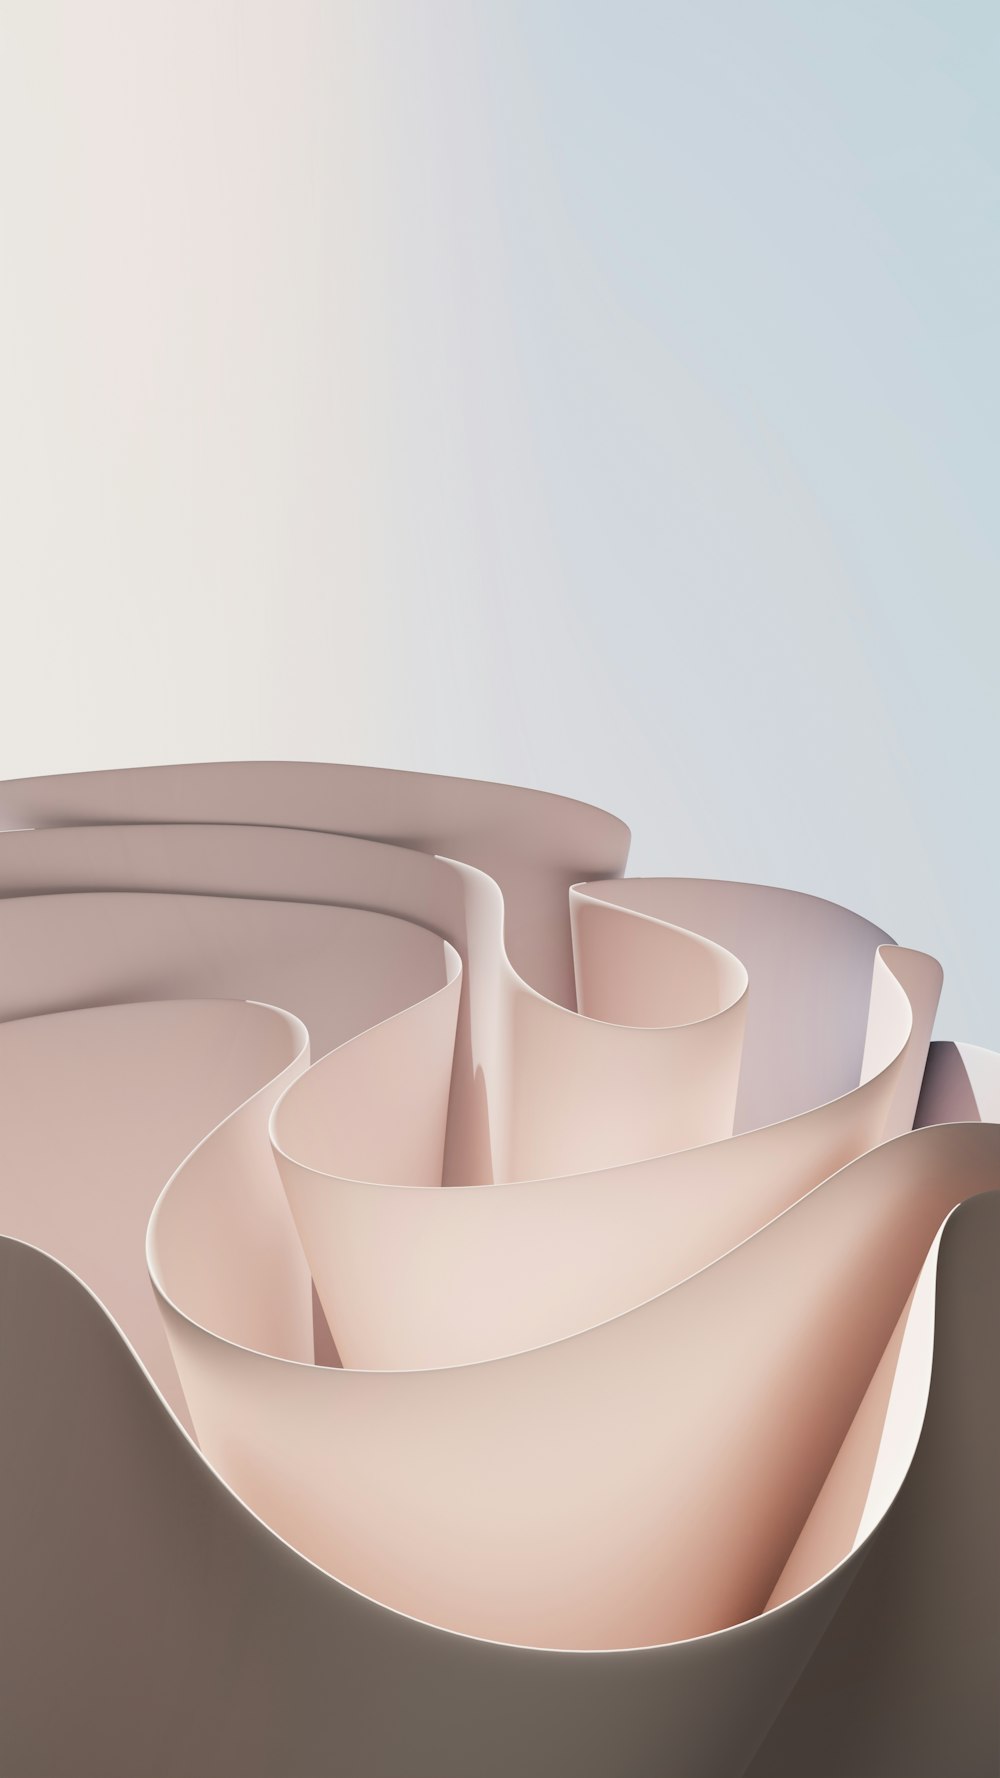 Image générée par ordinateur d’une surface courbe